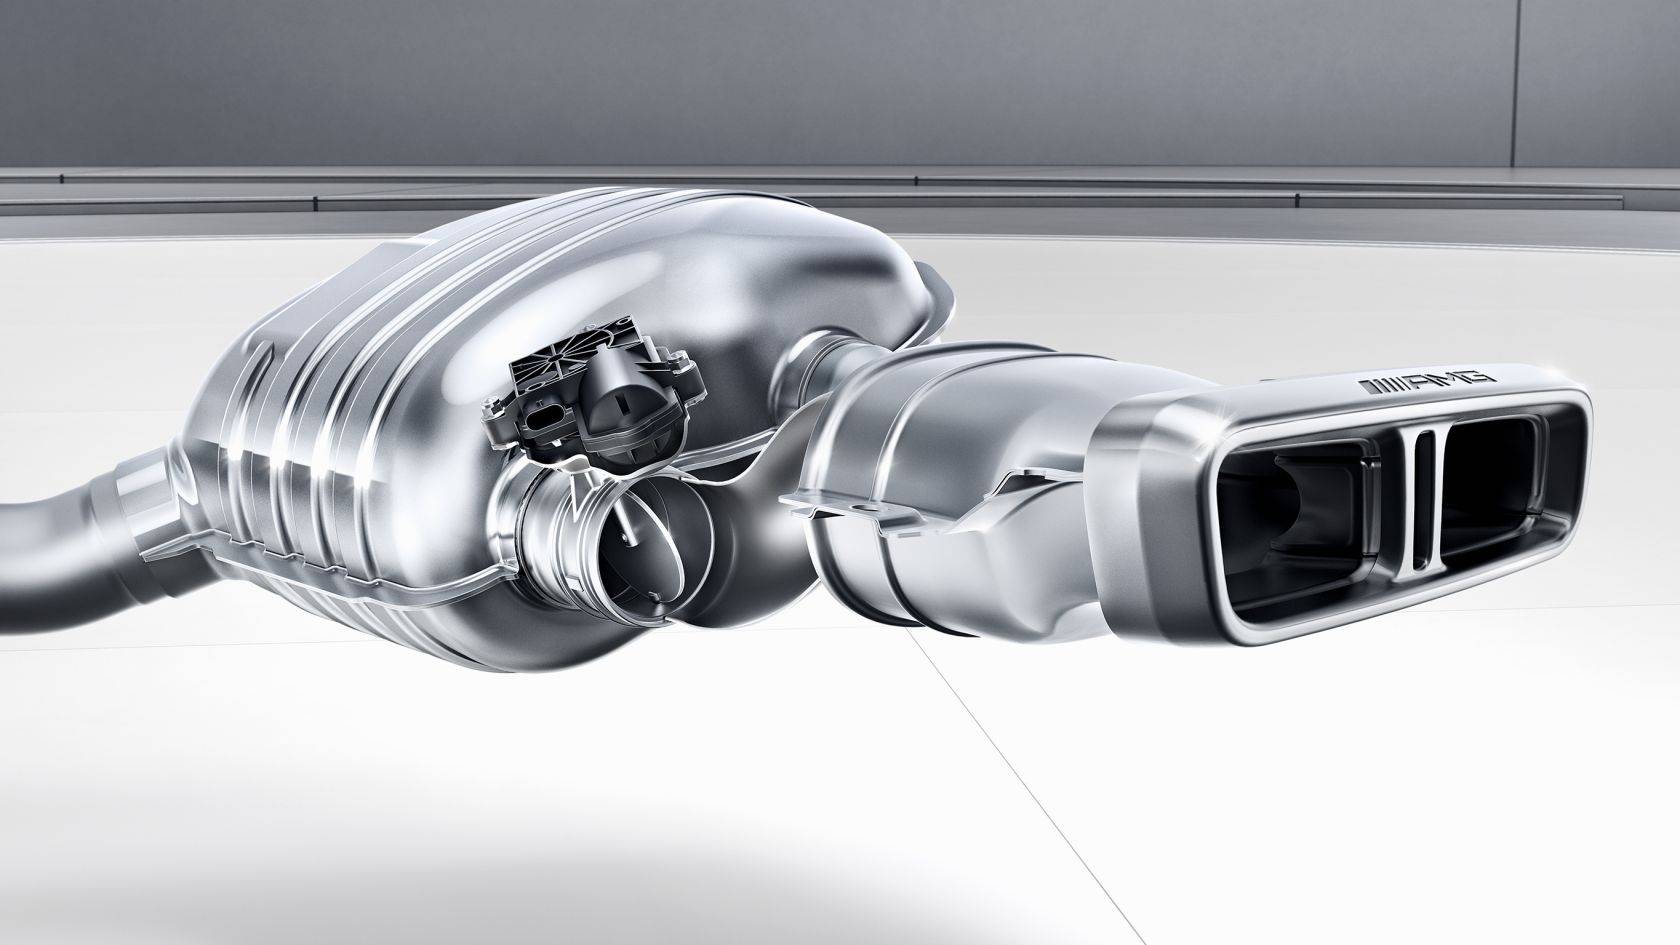 Mercedes раскрыл технические характеристики гиперкара amg project 1 мощностью более 1000 лошадиных сил